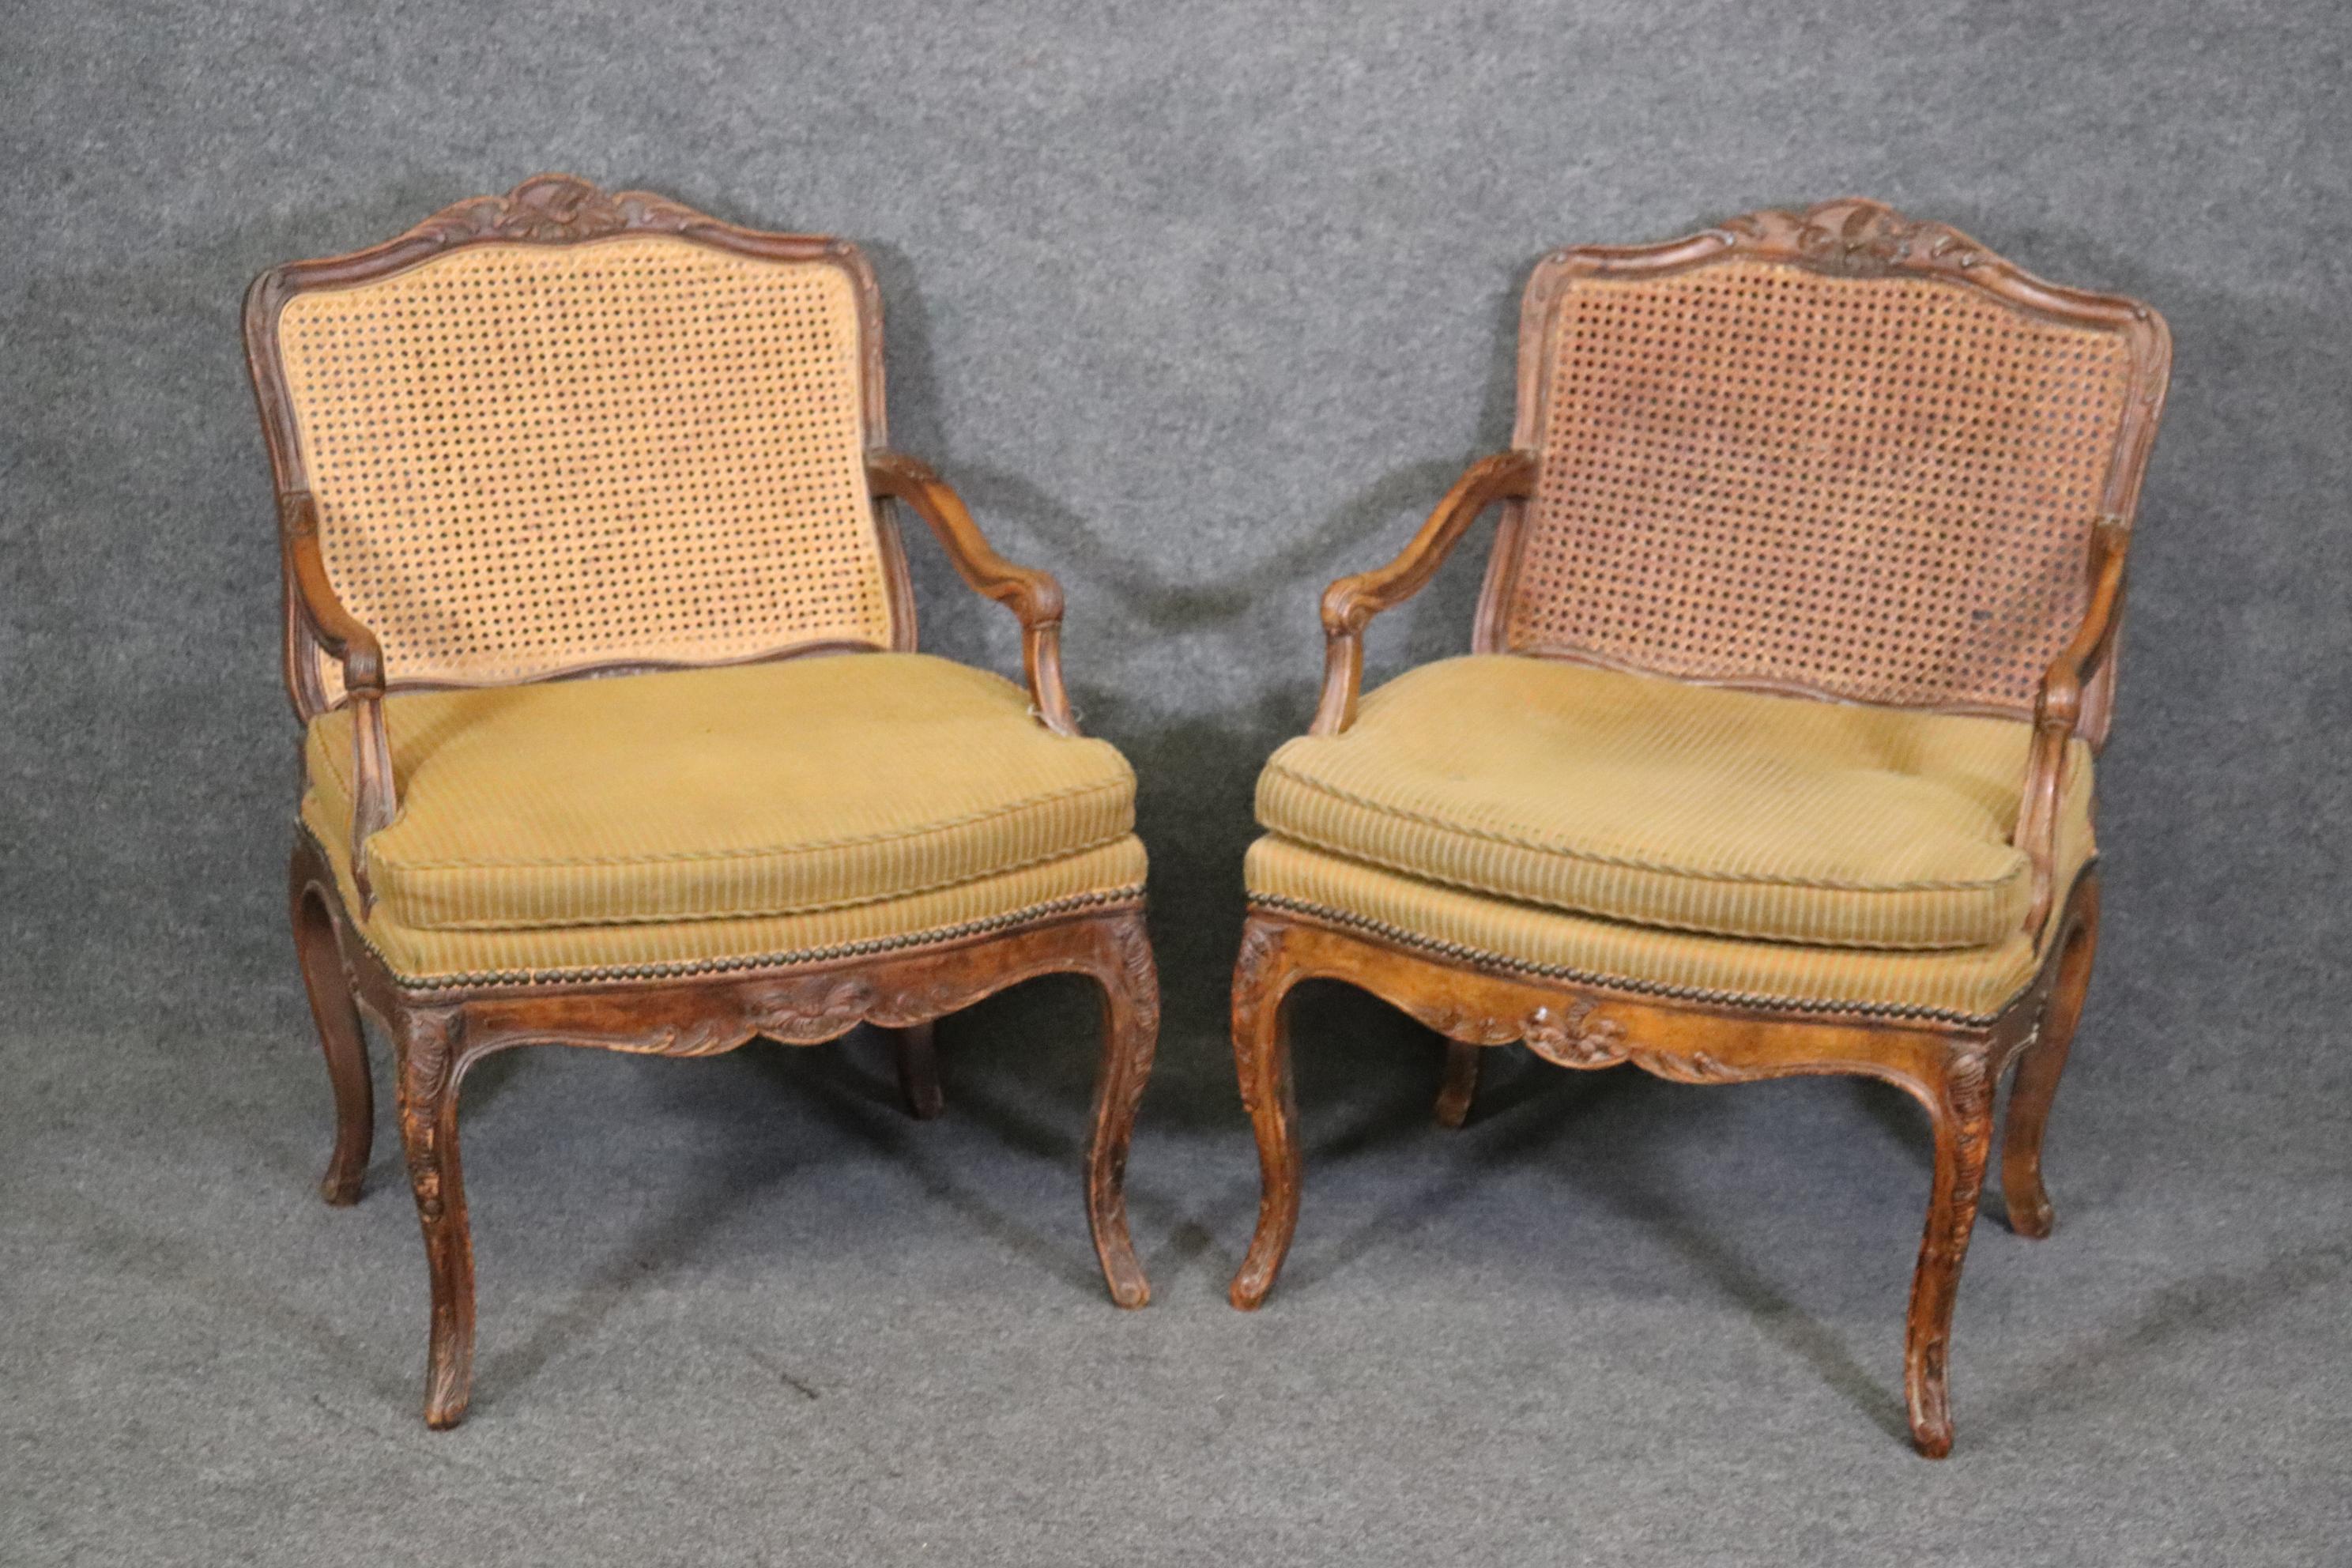 Ce sont de belles chaises. Ils présentent quelques pertes mineures au niveau de la canne. Les cadres sont en noyer sculpté de style Louis XV. Boutons manquants sur la sellerie. Les chaises mesurent 33,75 de haut x 24,5 de large x 27,25 de profondeur